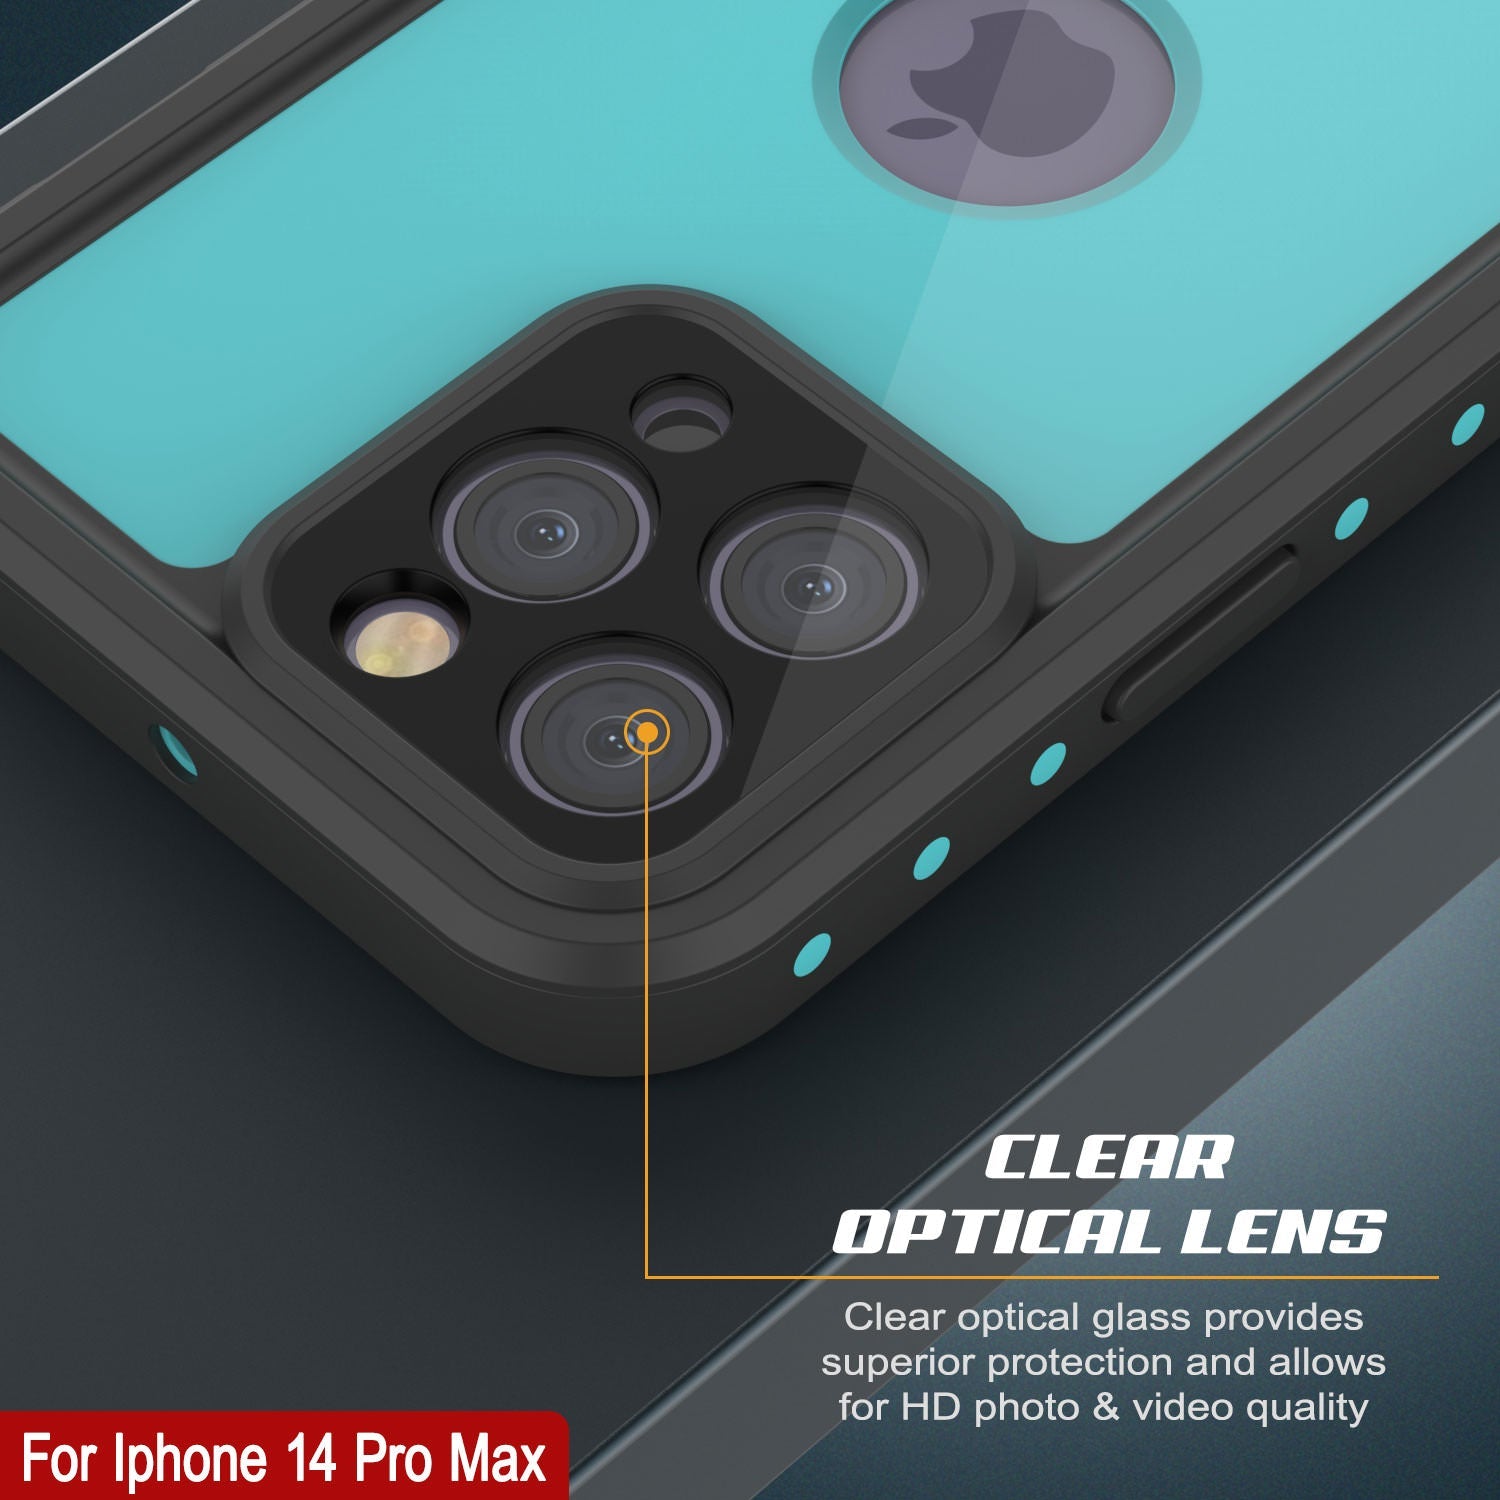 iPhone 14 Pro Max Waterproof IP68 Case, Punkcase [Teal] [StudStar Series] [Slim Fit]